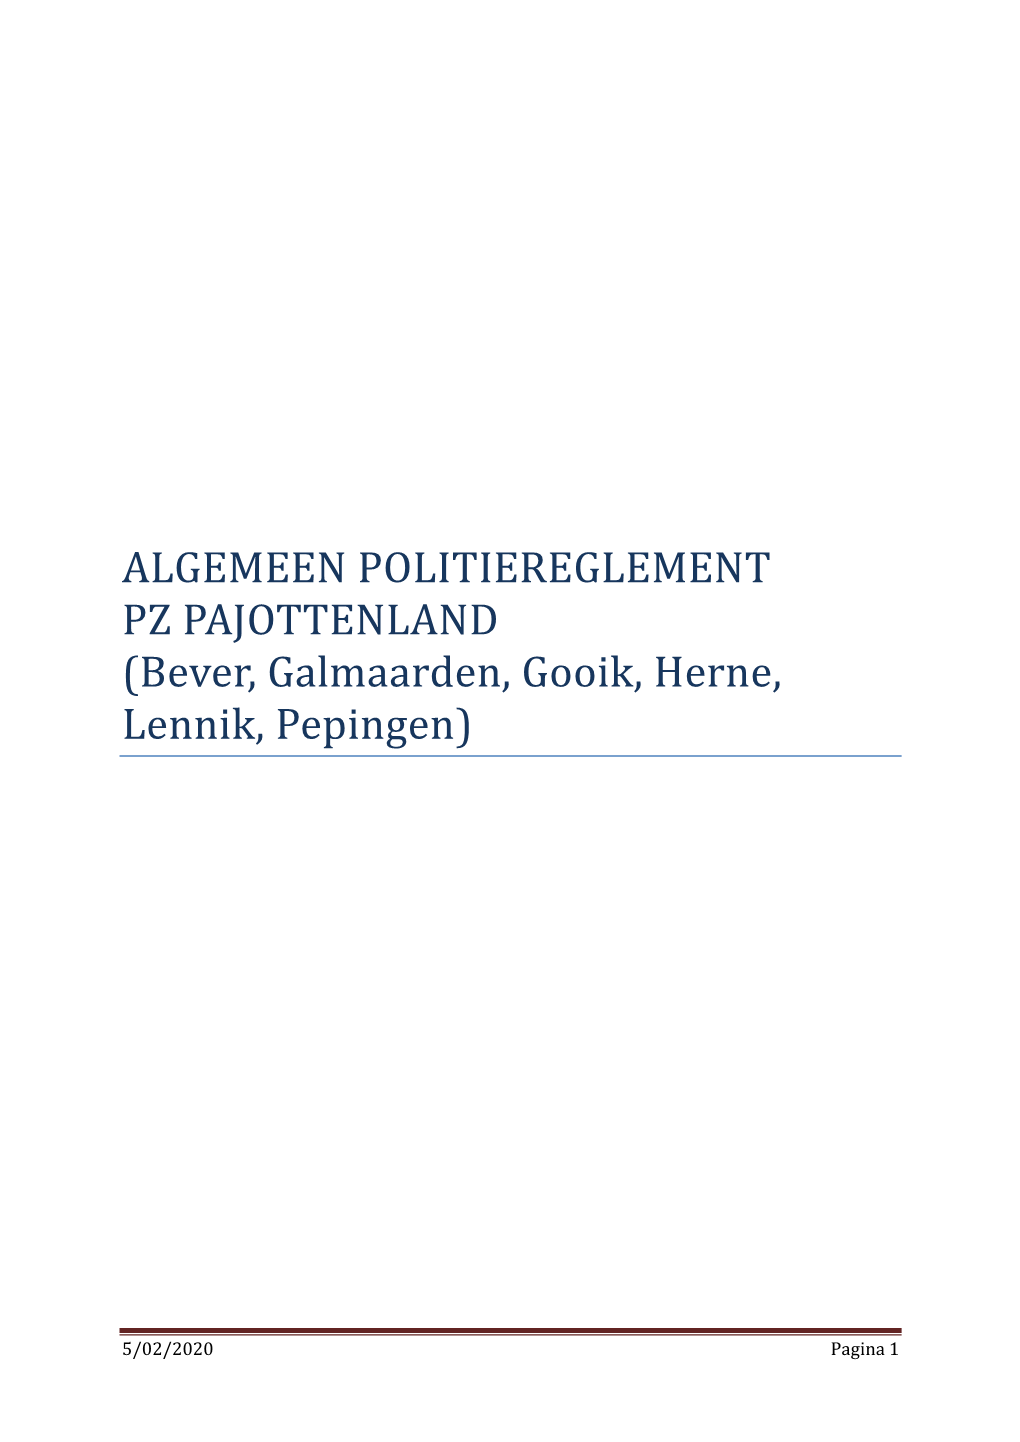 ALGEMEEN POLITIEREGLEMENT PZ PAJOTTENLAND (Bever, Galmaarden, Gooik, Herne, Lennik, Pepingen)